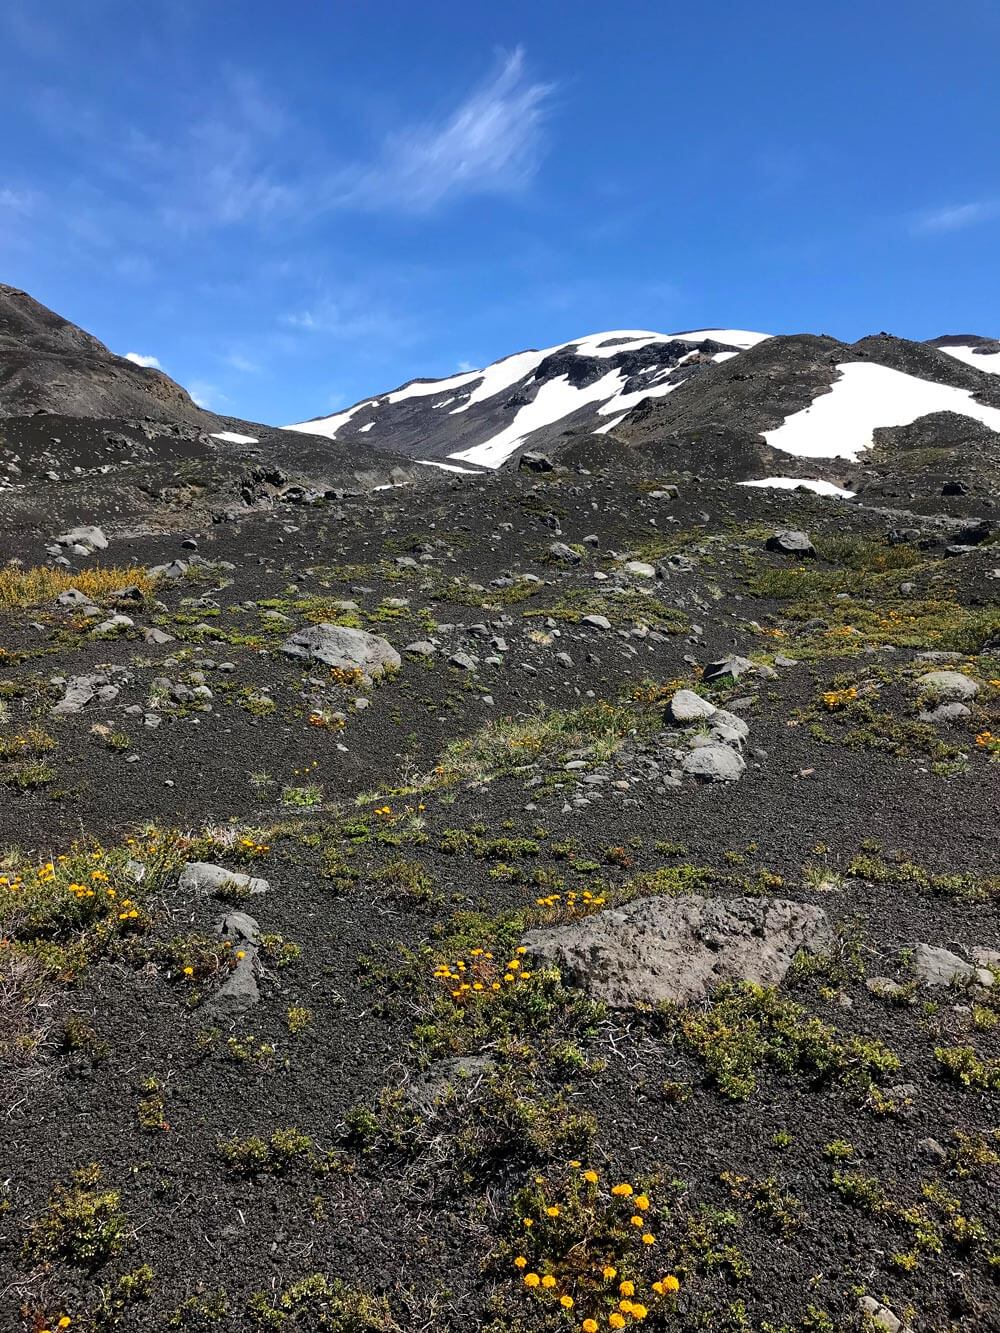 Al comienzo de la subida por la ladera del volcán se ven manchas verdes y amarillas por el Quinchamalí y pequeños manchones de nieve.